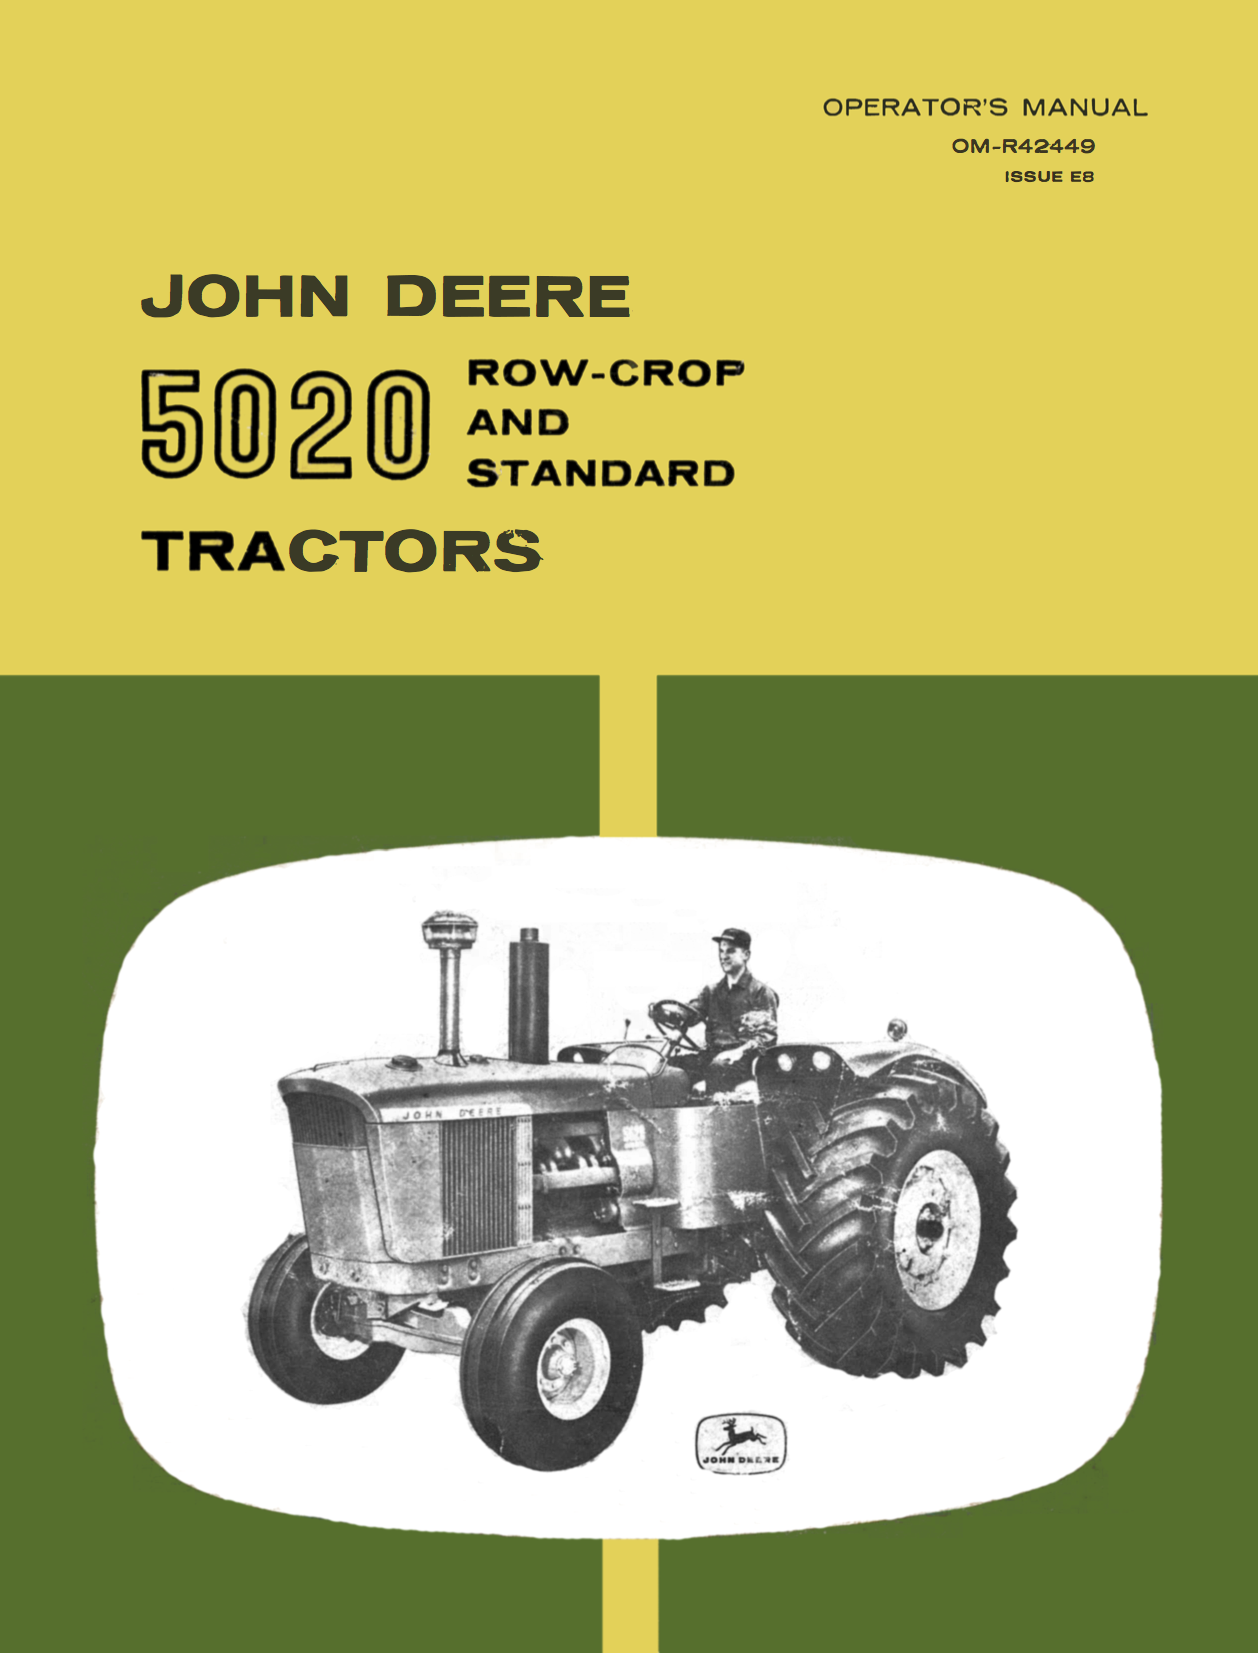 John Deere 5020 Row-Crop and Standard Tractors - Operator's Manual - Ag Manuals - A Provider of Digital Farm Manuals - 1